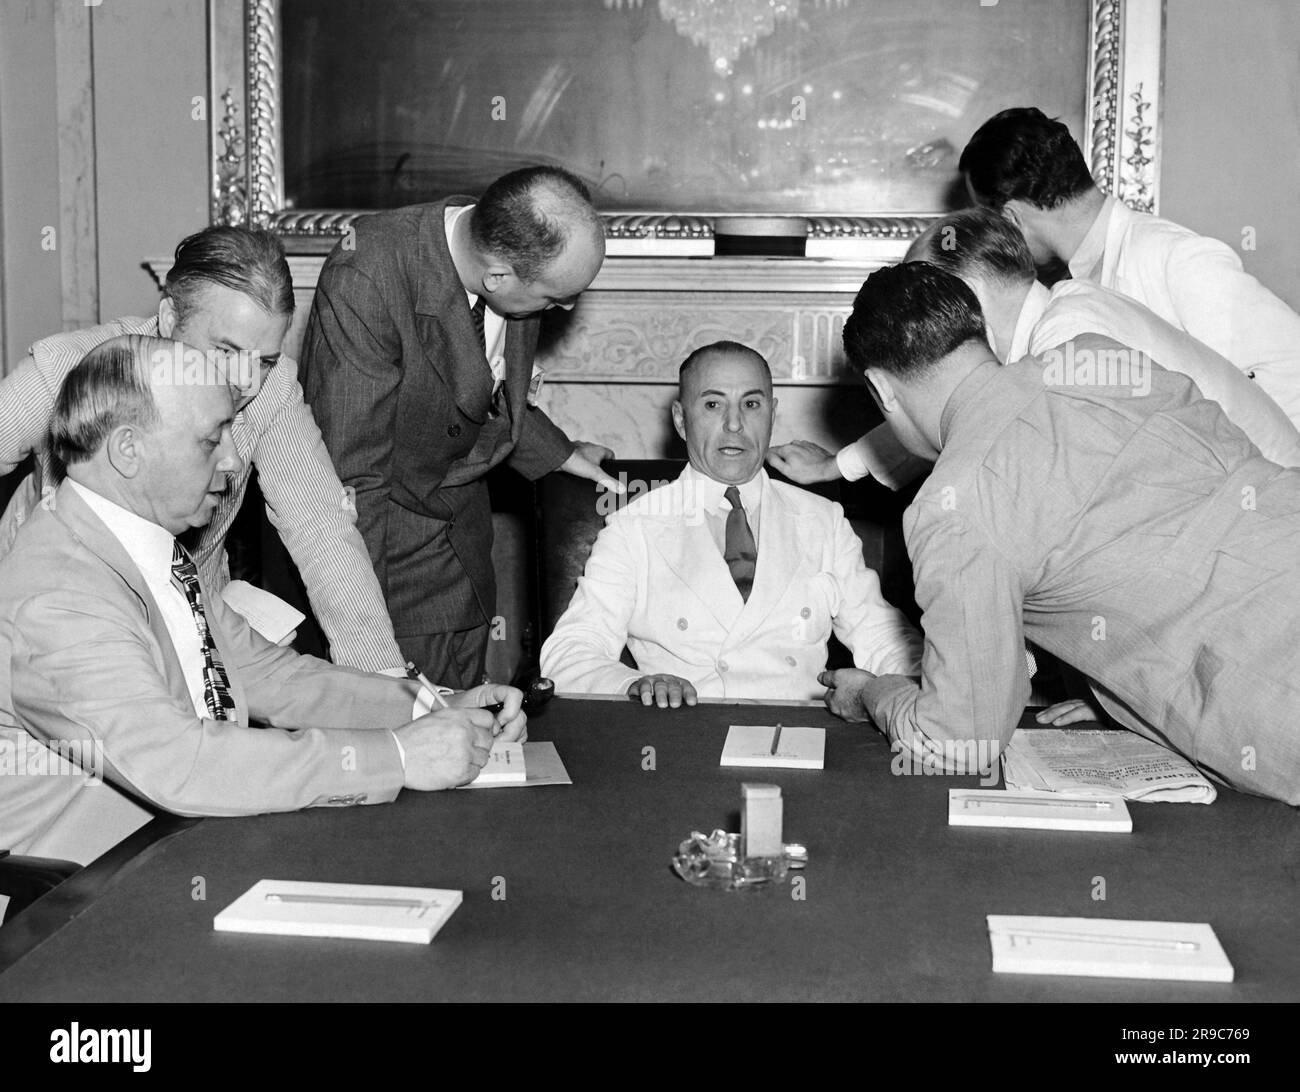 Washington, D.C.: 13. August 1937 Senator M. Neeley aus West Virginia wird von der Presse über die Nominierung von Senator Hugo L. Black für den Obersten Gerichtshof gegrillt. Neeley ist Vorsitzender des Justizkomitees des Senats. Stockfoto